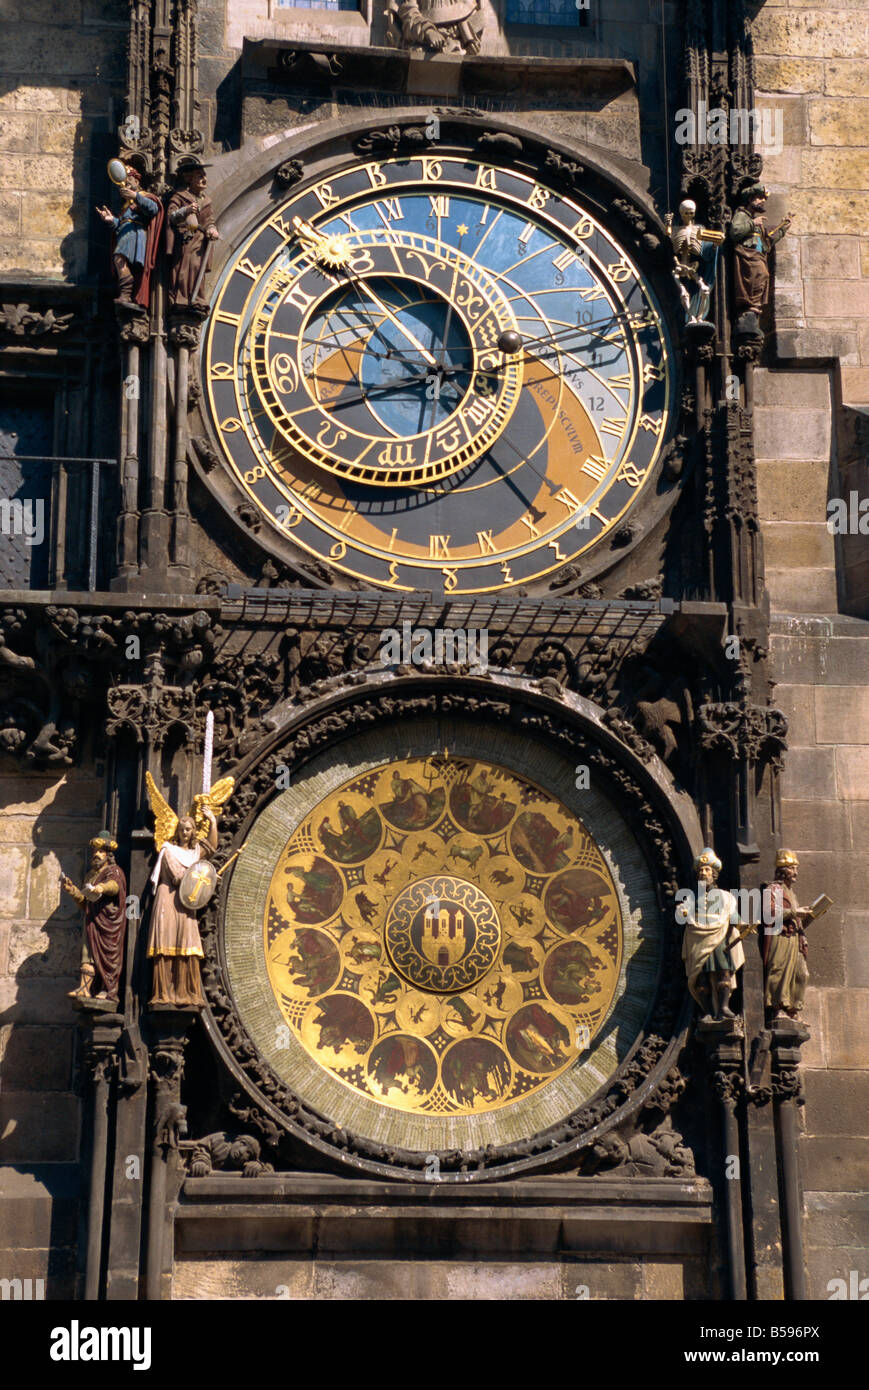 Astronomische Uhr, Altstädter Ring, Prag, Tschechische Republik, Europa Stockfoto